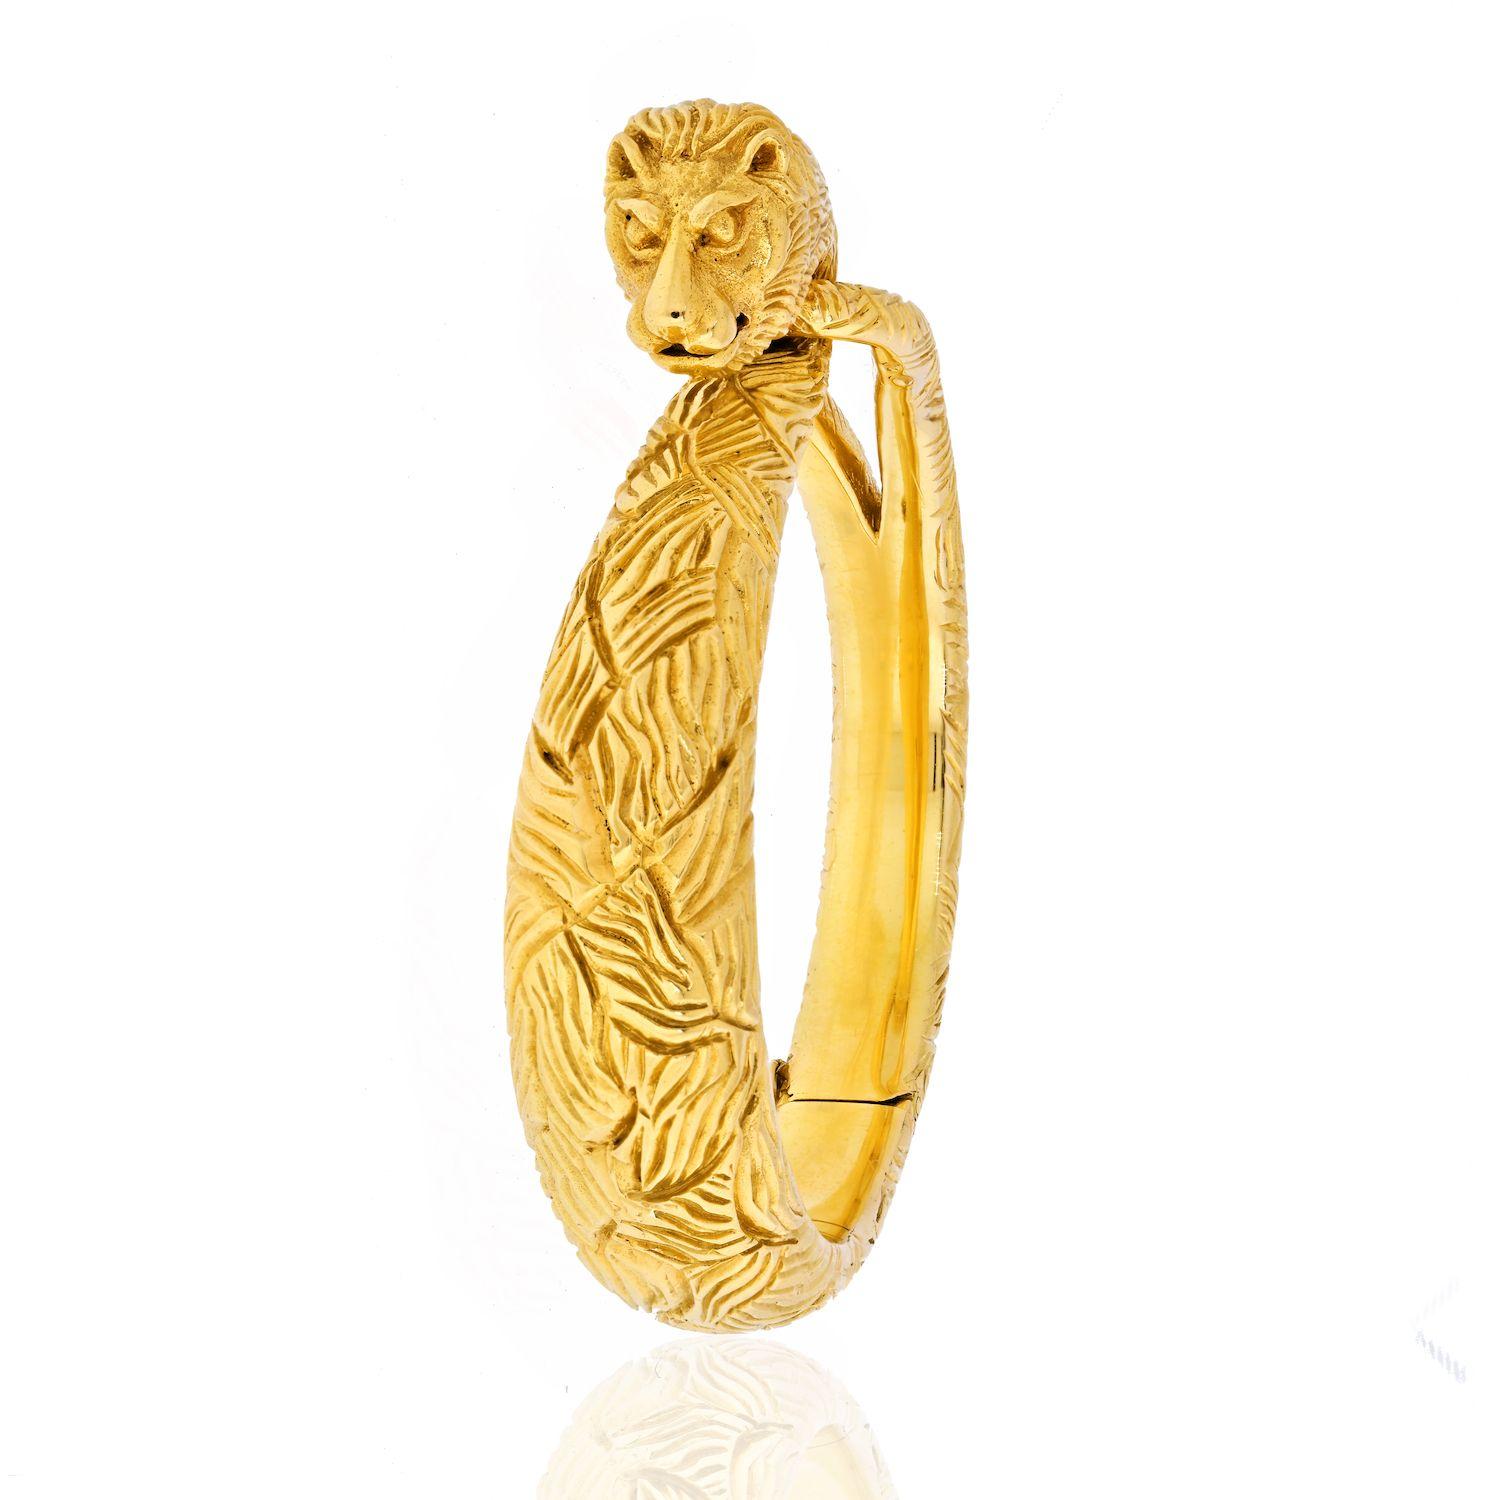 Cartier Bracelet Lion en or jaune 18 carats

Le roi Édouard VII a surnommé Cartier 